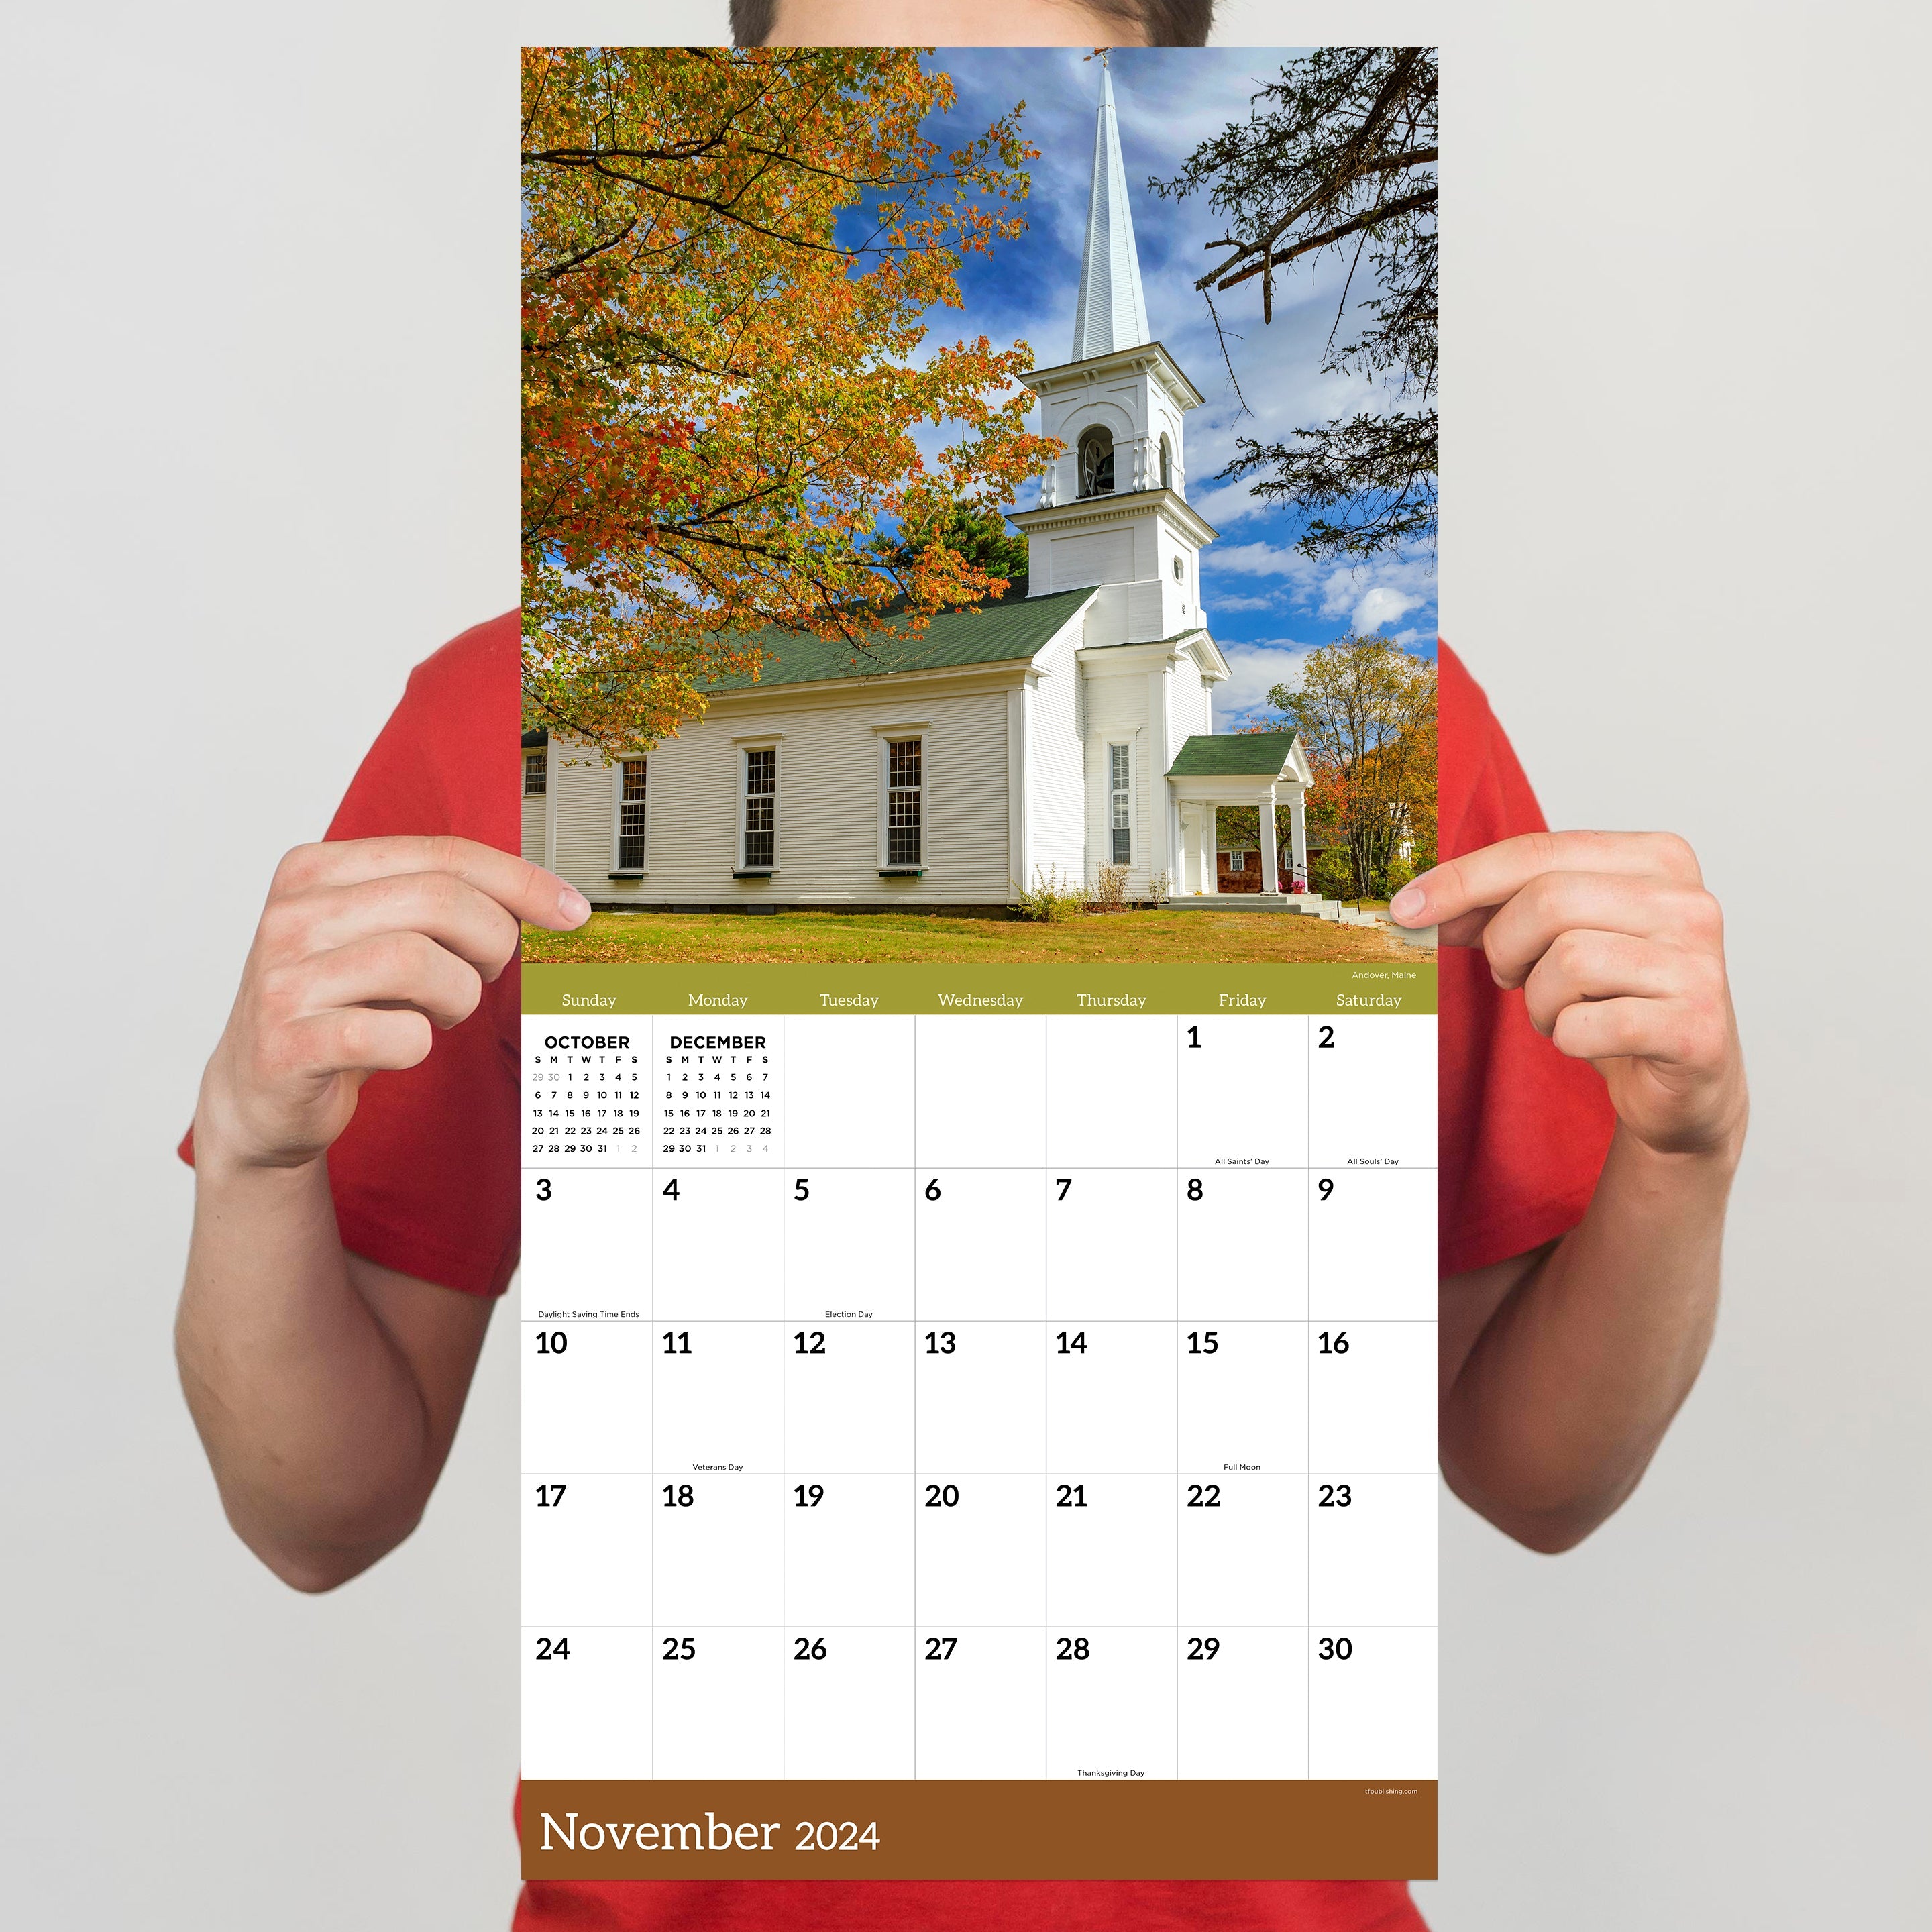 2024 Churches - Square Wall Calendar